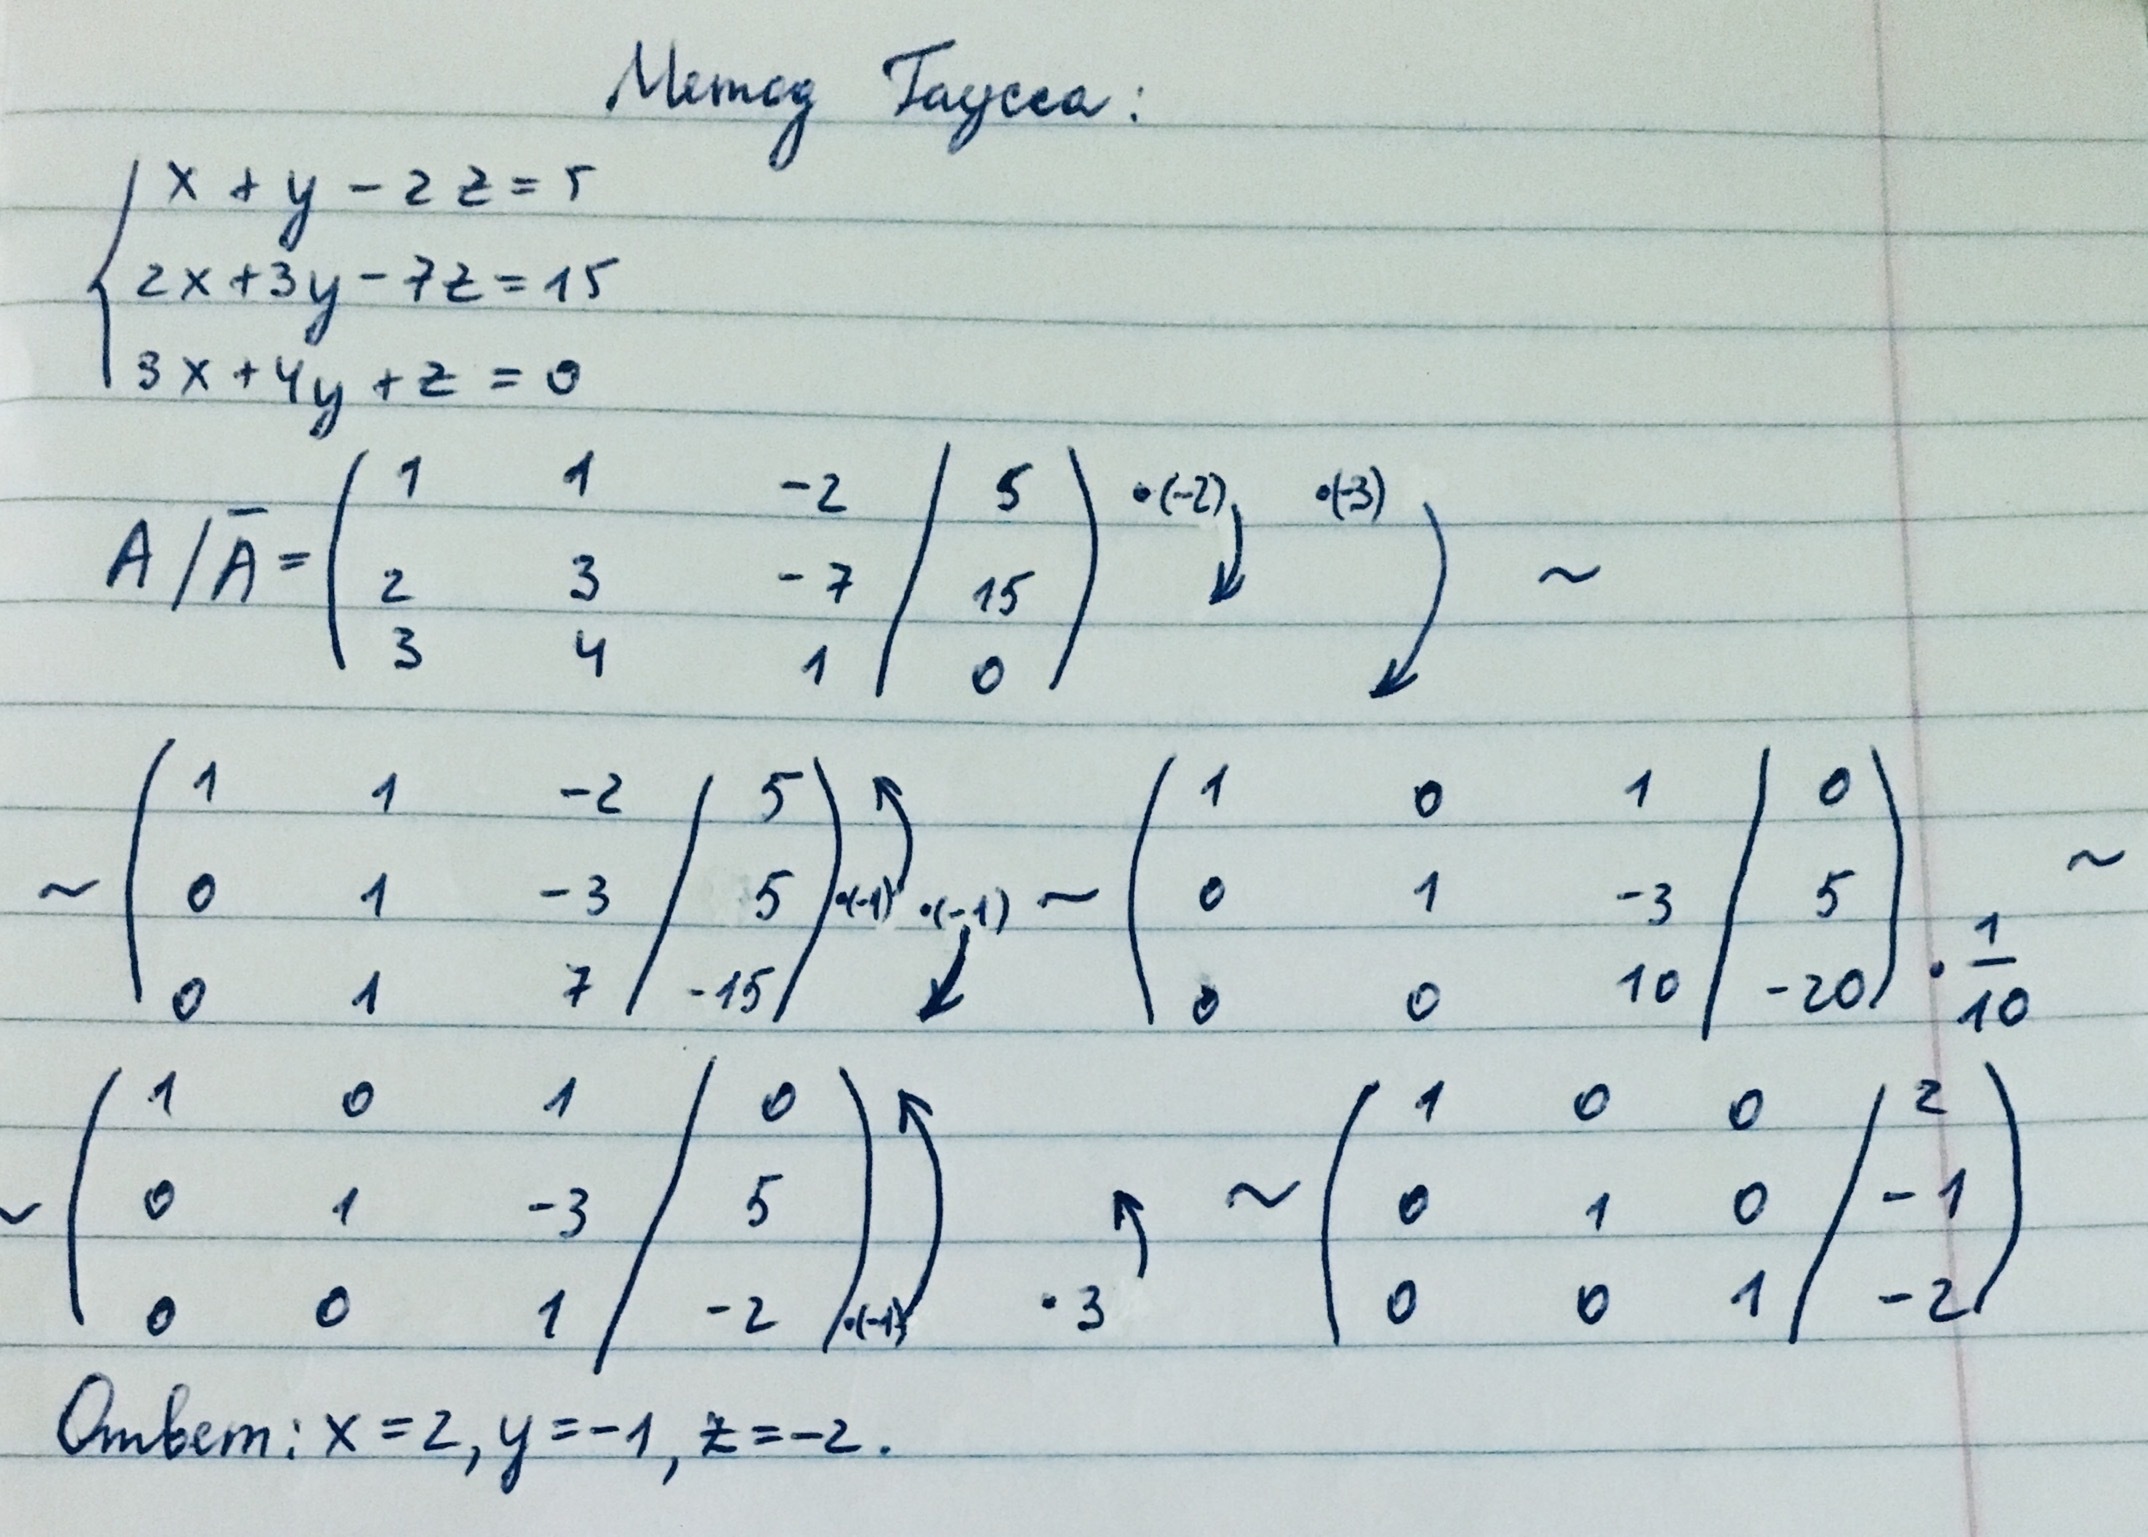 4x 6 3 x 3y 5. X+Y+Z=5. Z=(X^2)/Y + Y/X^2. (Z+X)2 + 2*3*(Z+X)+3 2. Z=x3+y3.